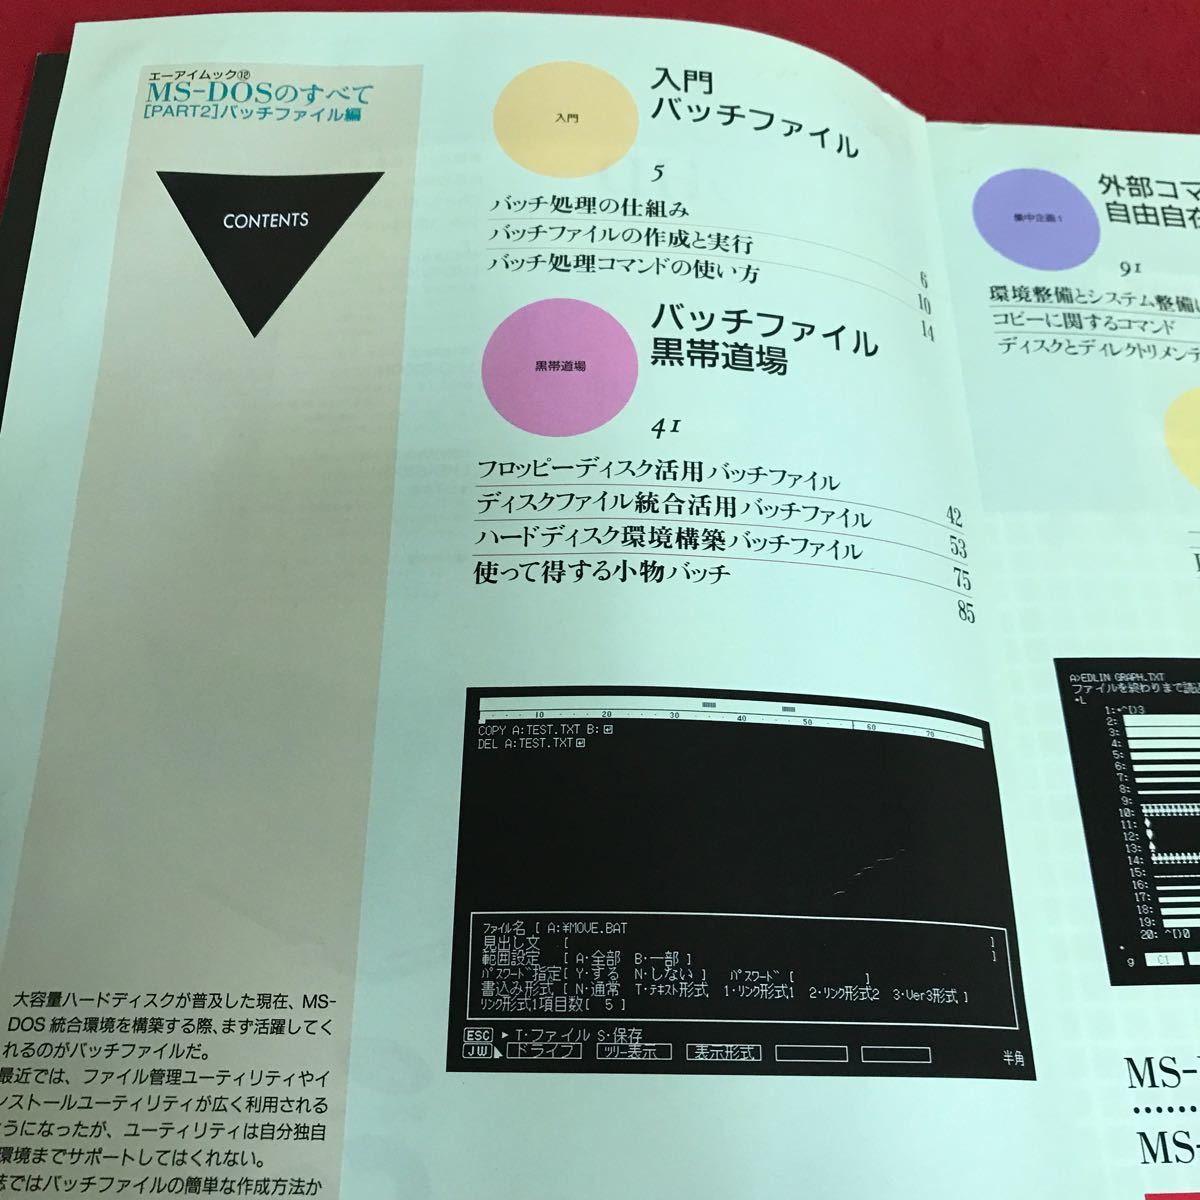 g-041 MS-DOS. все PART2 patch файл сборник специальный выпуск bachi файл чёрный obi дорога место концентрация план внешний commando свободно e- I выпускать *8